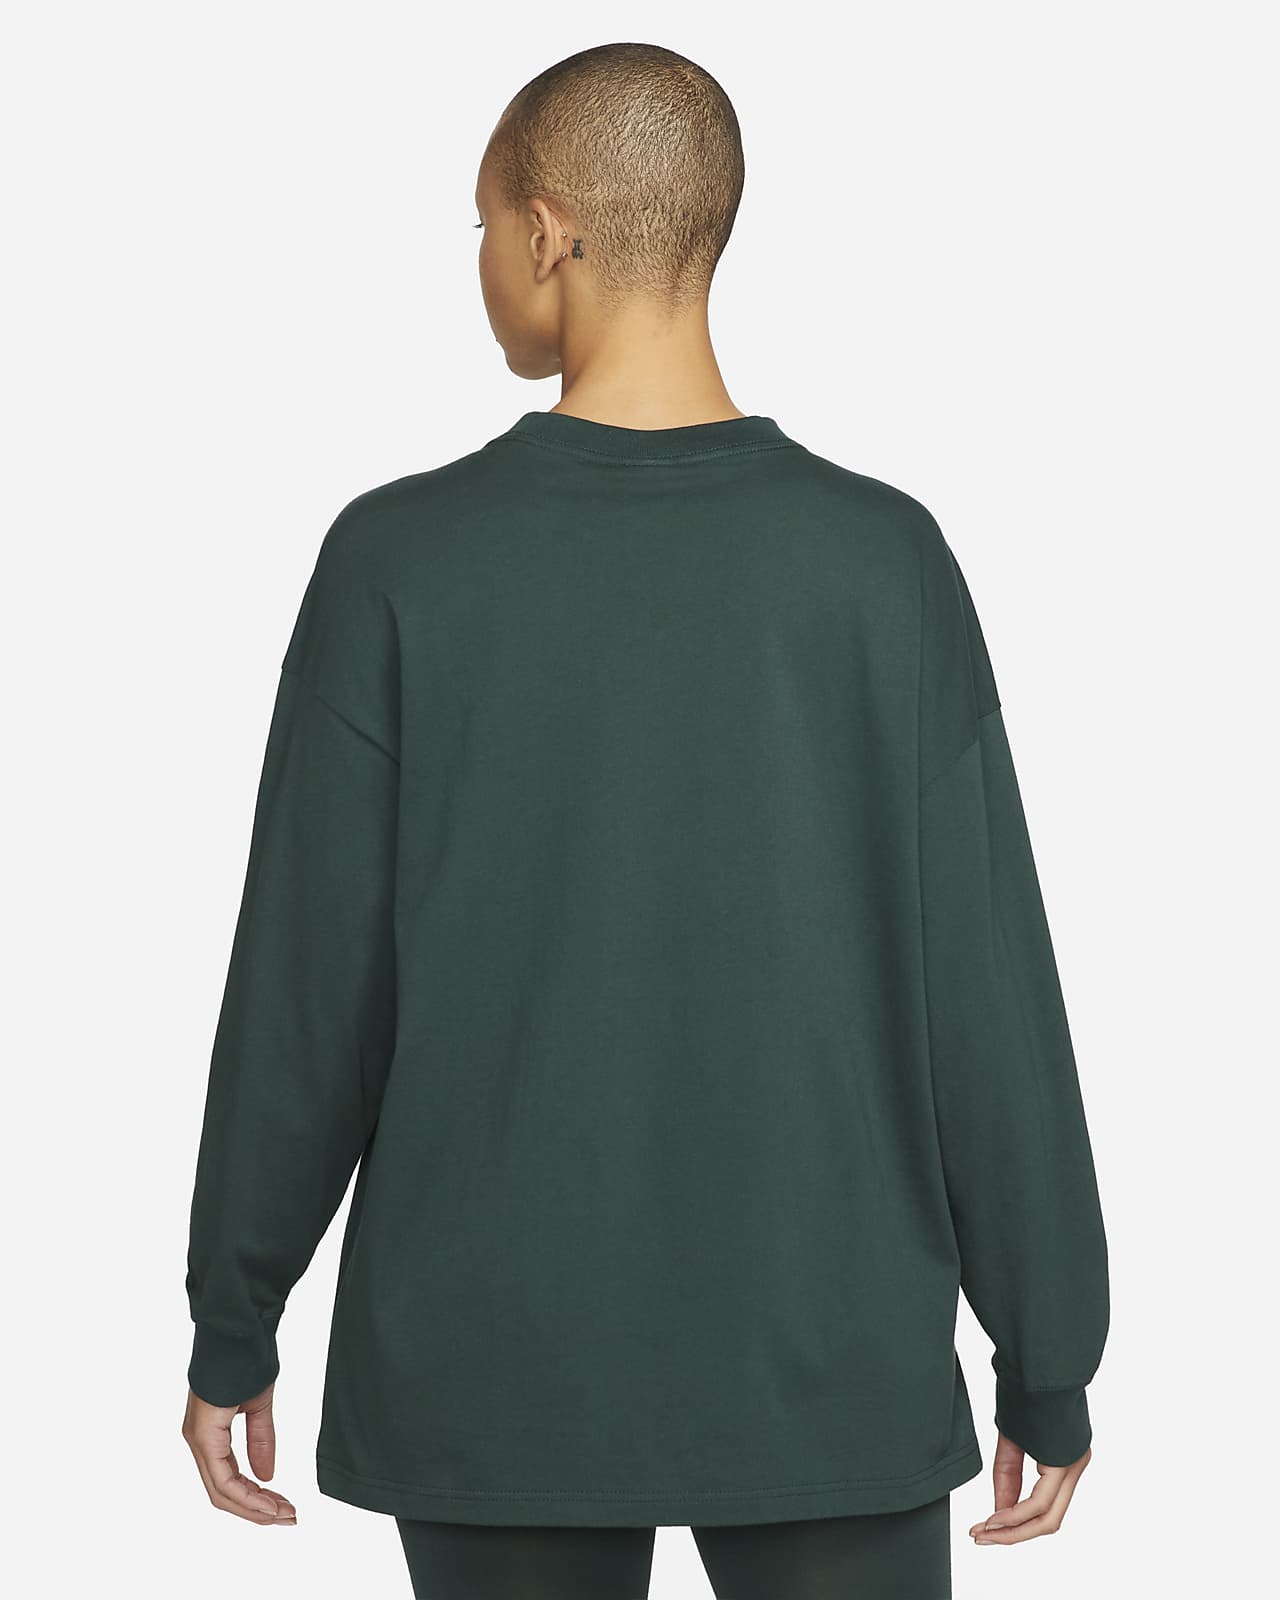 Nike Yoga Luxe Long Sleeve T-Shirt Green